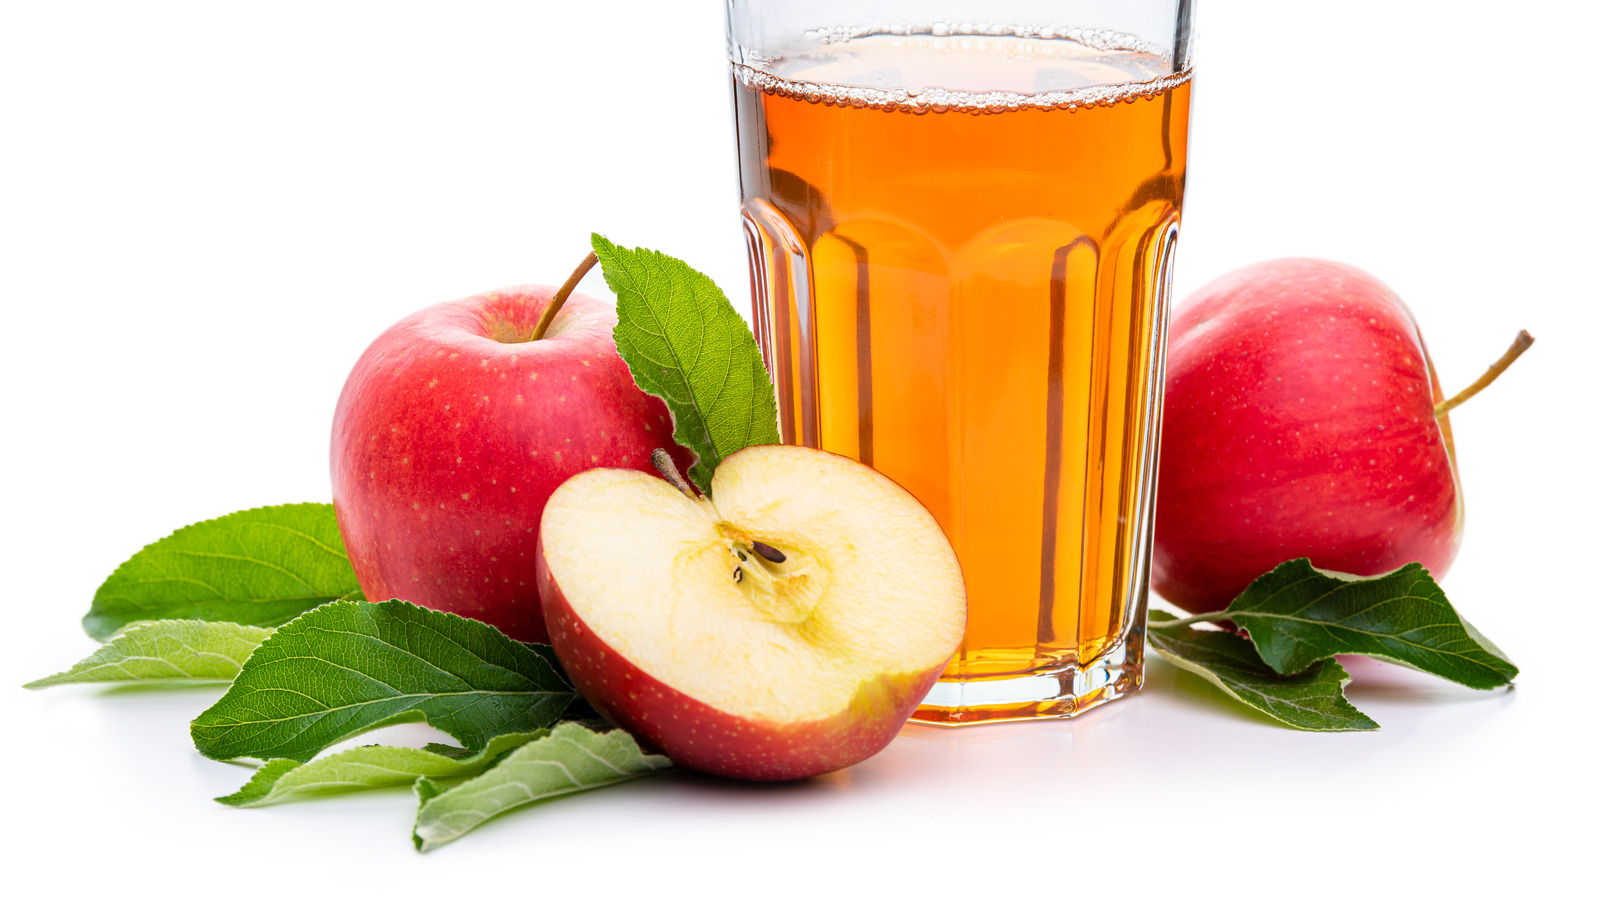 best apple juice brands 2019